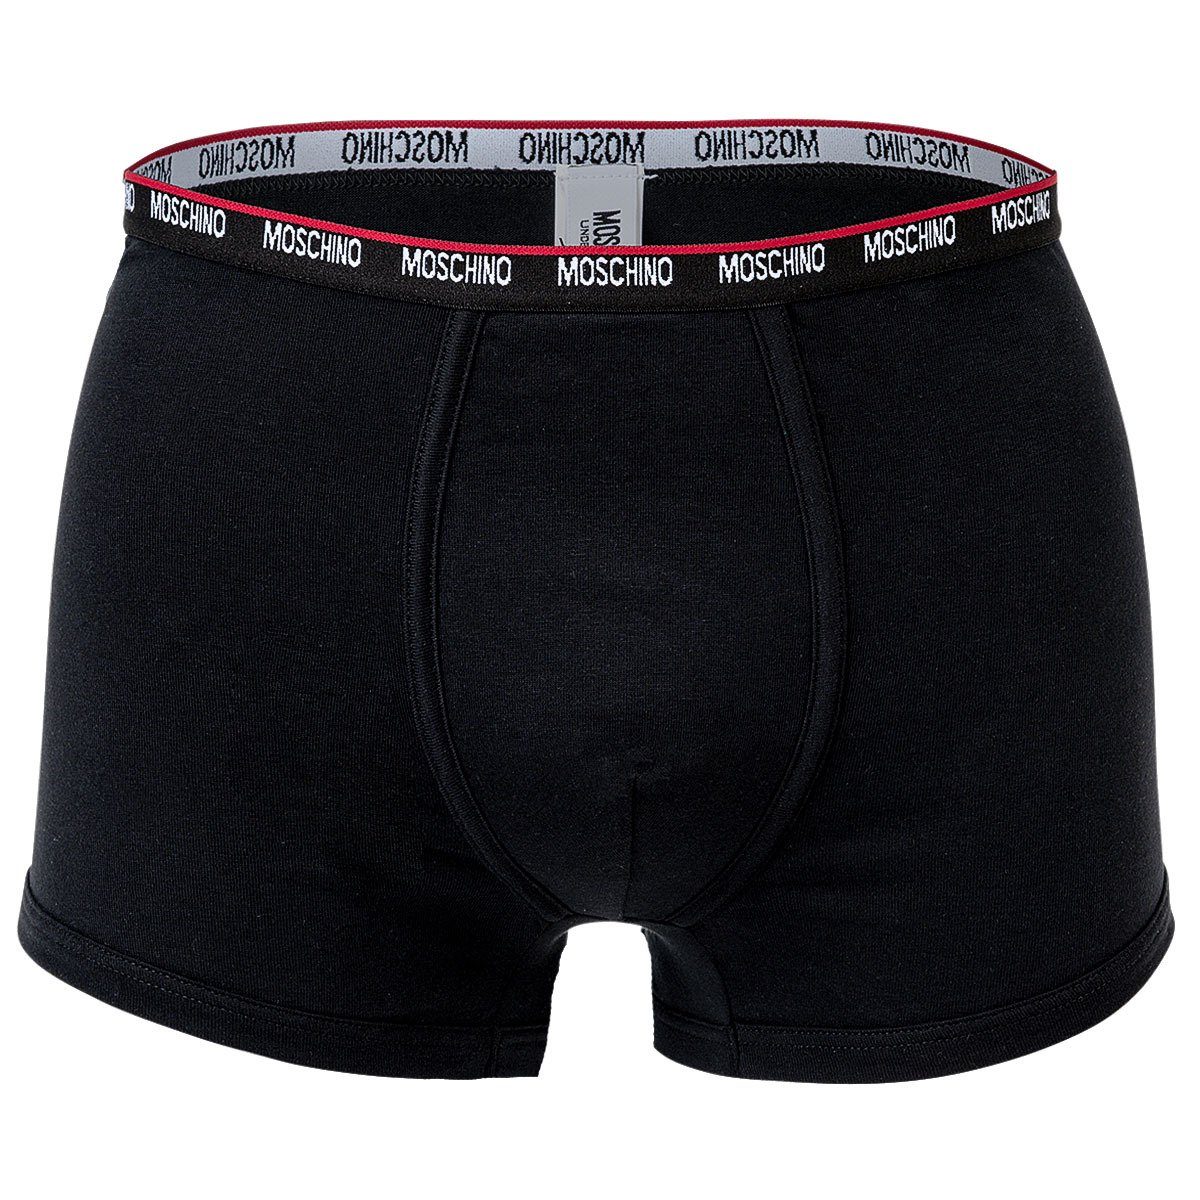 Pack Boxer Moschino Cotton Trunks, Shorts Schwarz - Herren 2er Unterhose,